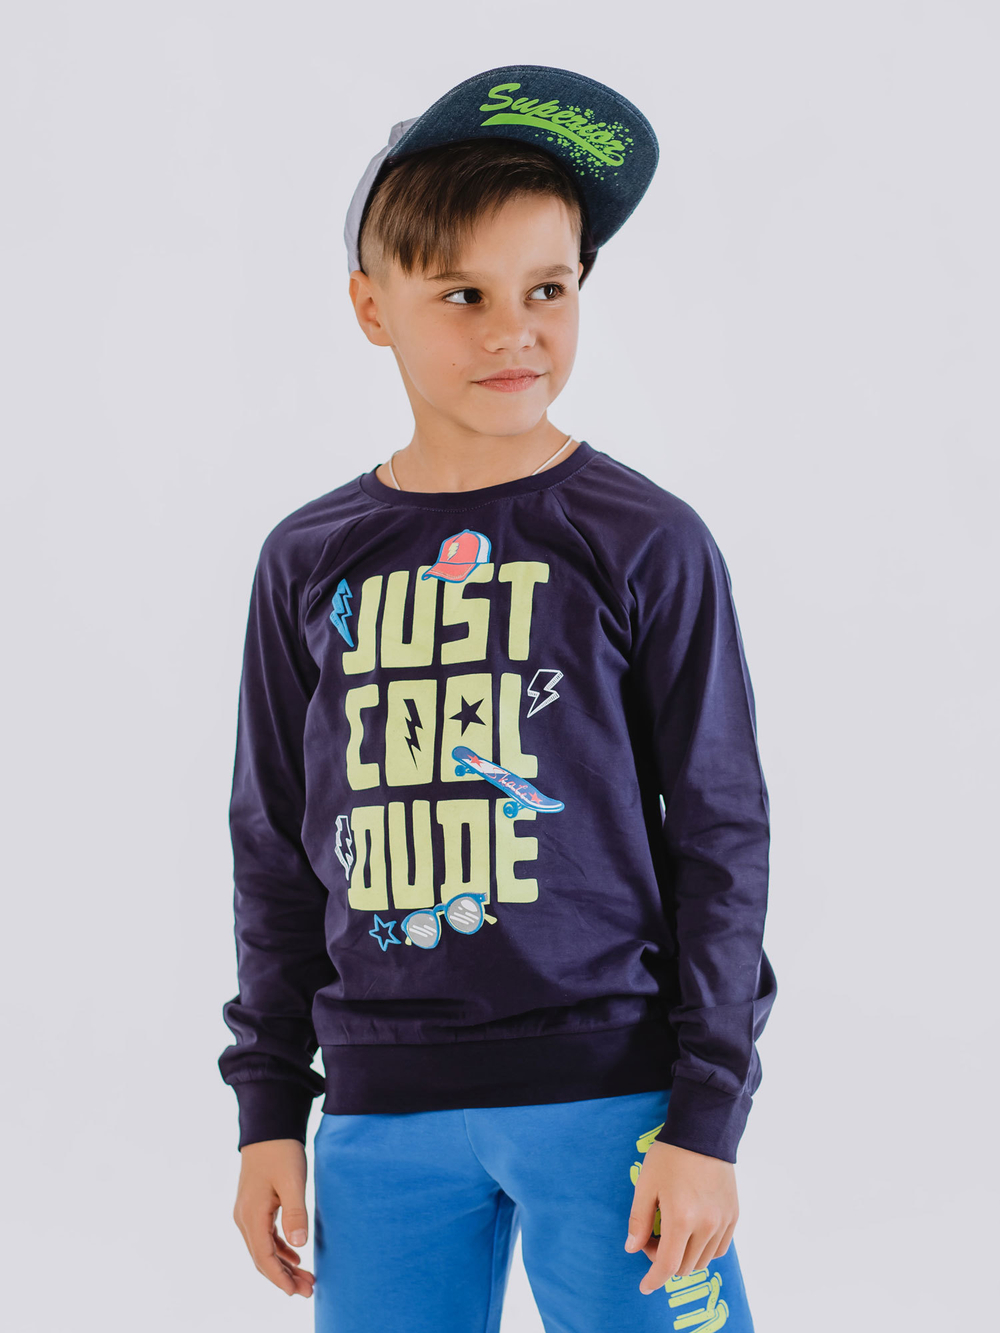 Свитшот (пуловер) для мальчика с длинными рукавами и принтом-надписью купить